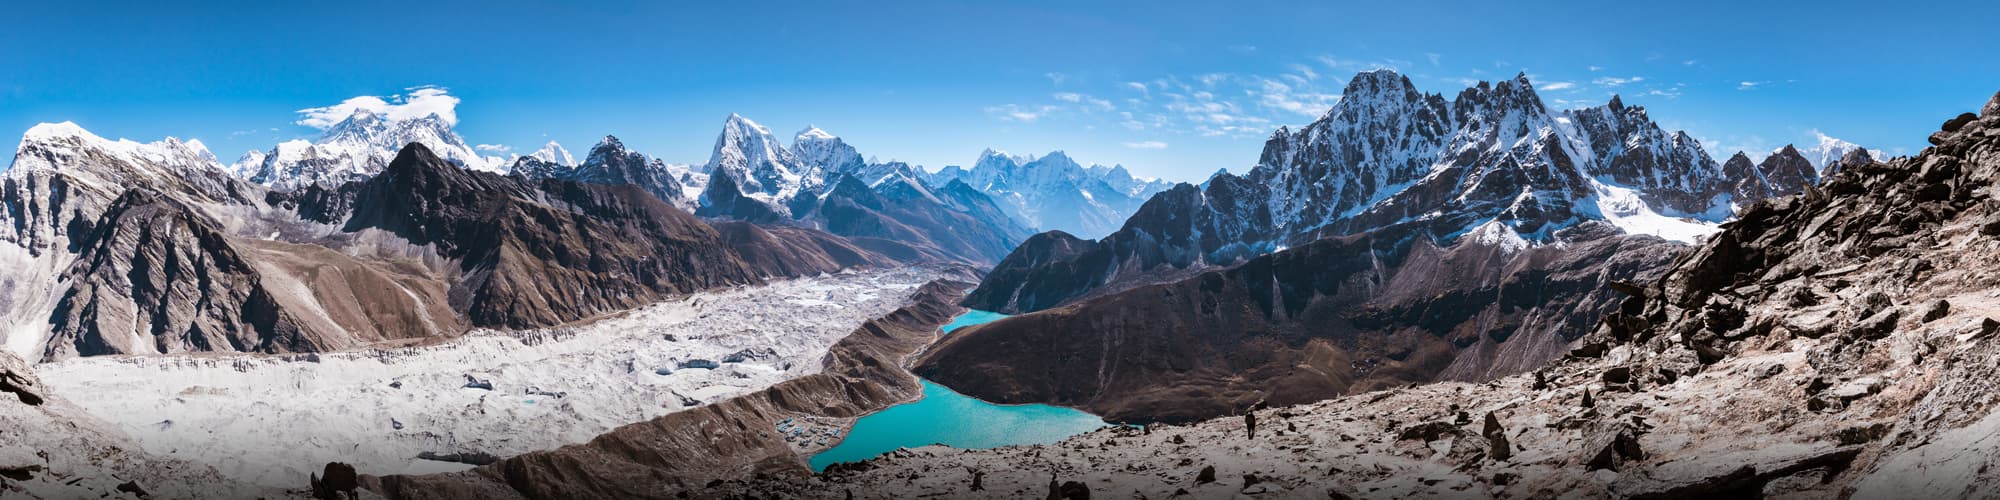 Trekking au Népal : randonnée, trek et voyage © Thrithot / Adobe Stock